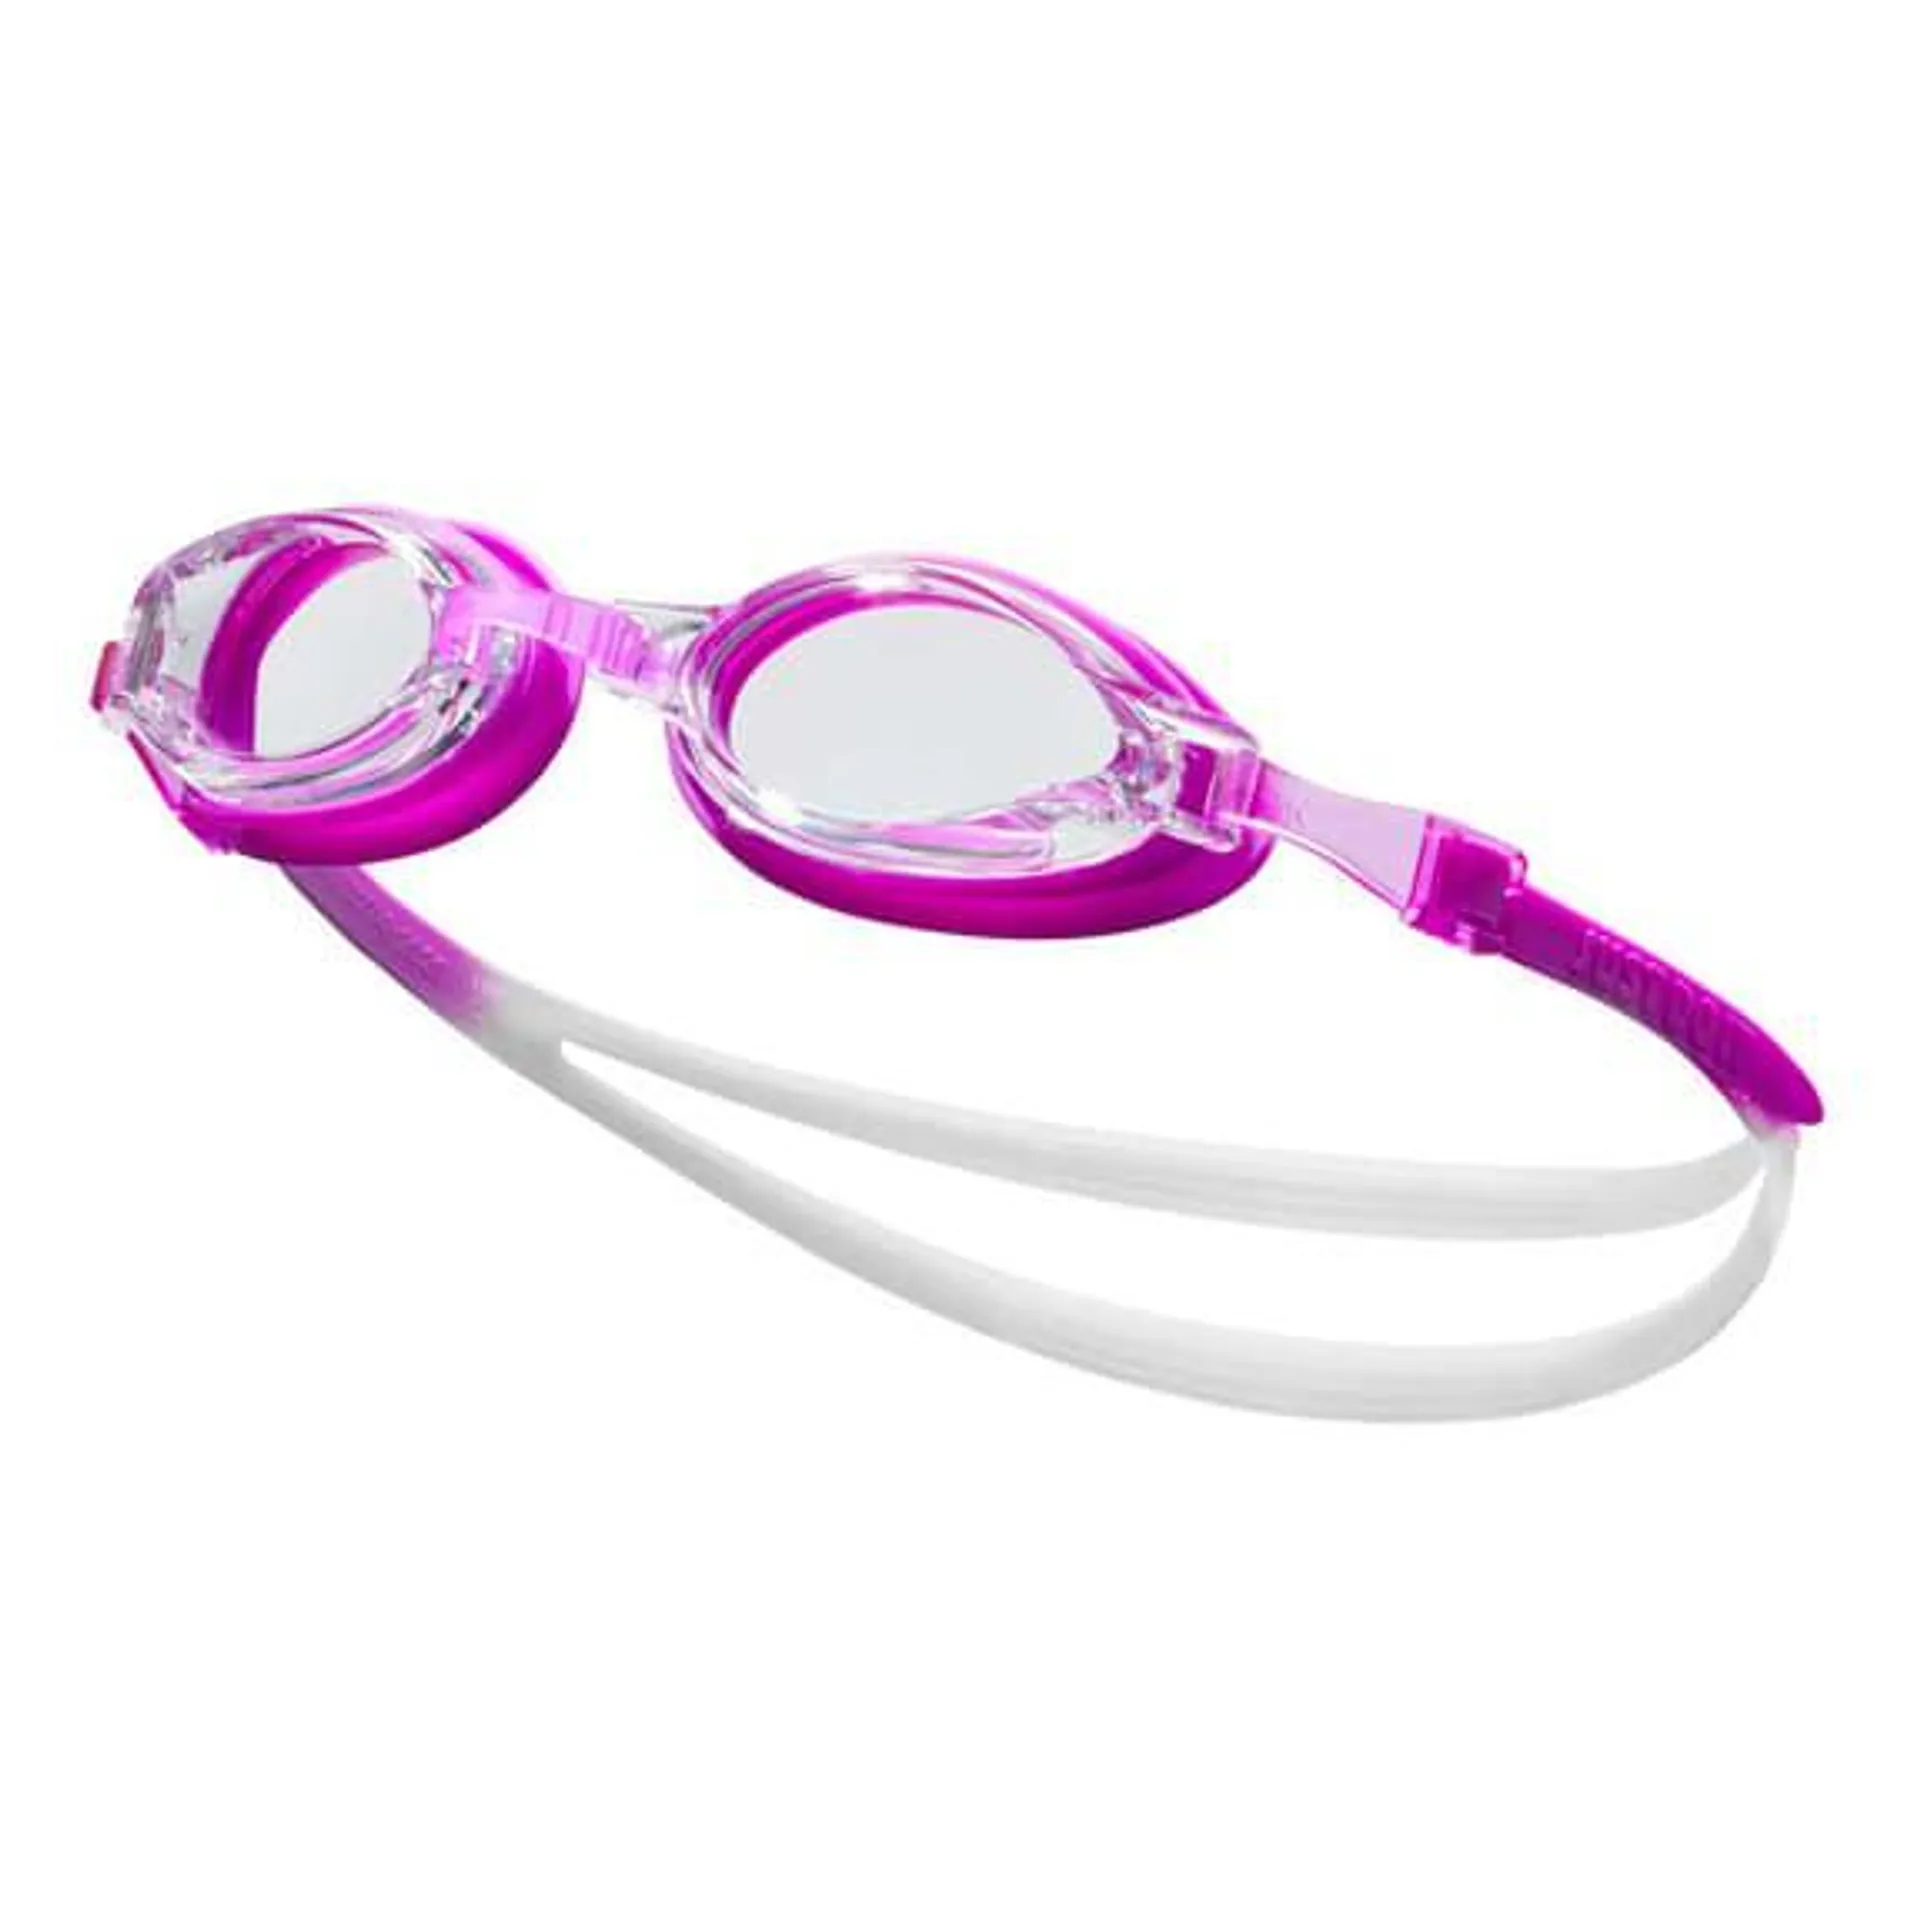 Lunettes de natation Nike Swim Chrome Remora lilas blanc avec verres à effet miroir